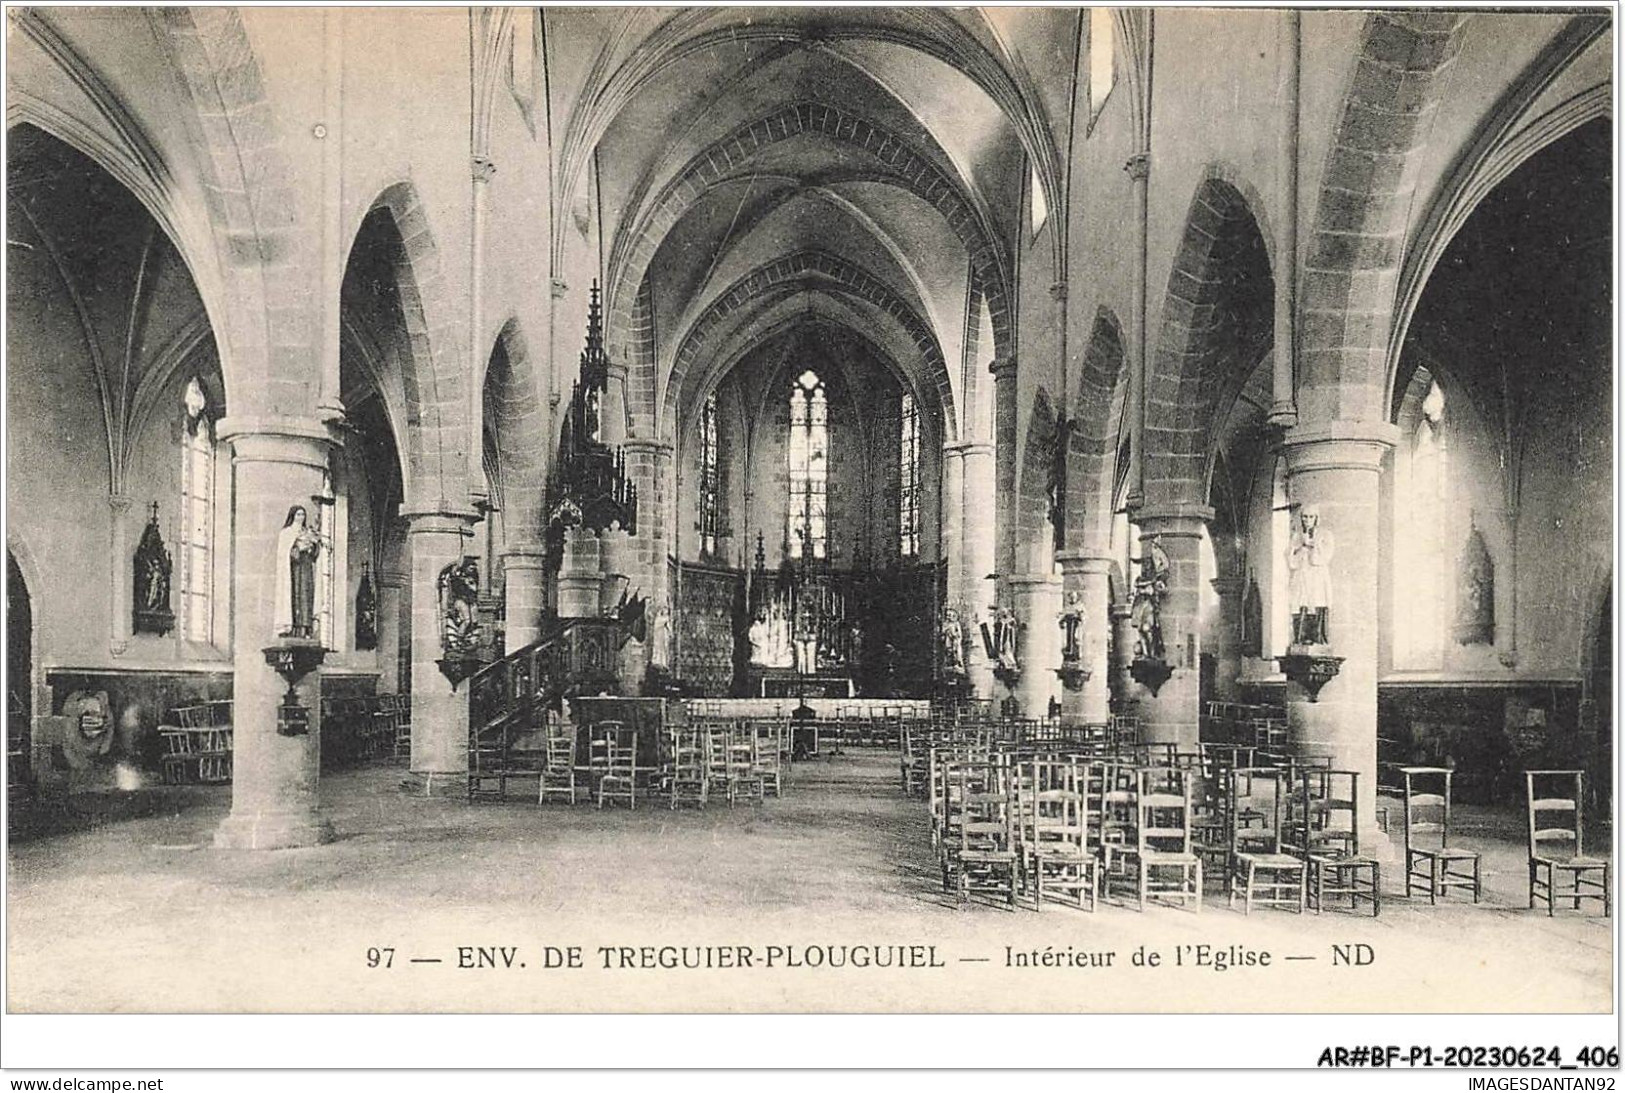 AR#BFP1-22-0204 - Environ De TREGUIER-PLOUGUIEL - Interieur De L'église - Tréguier